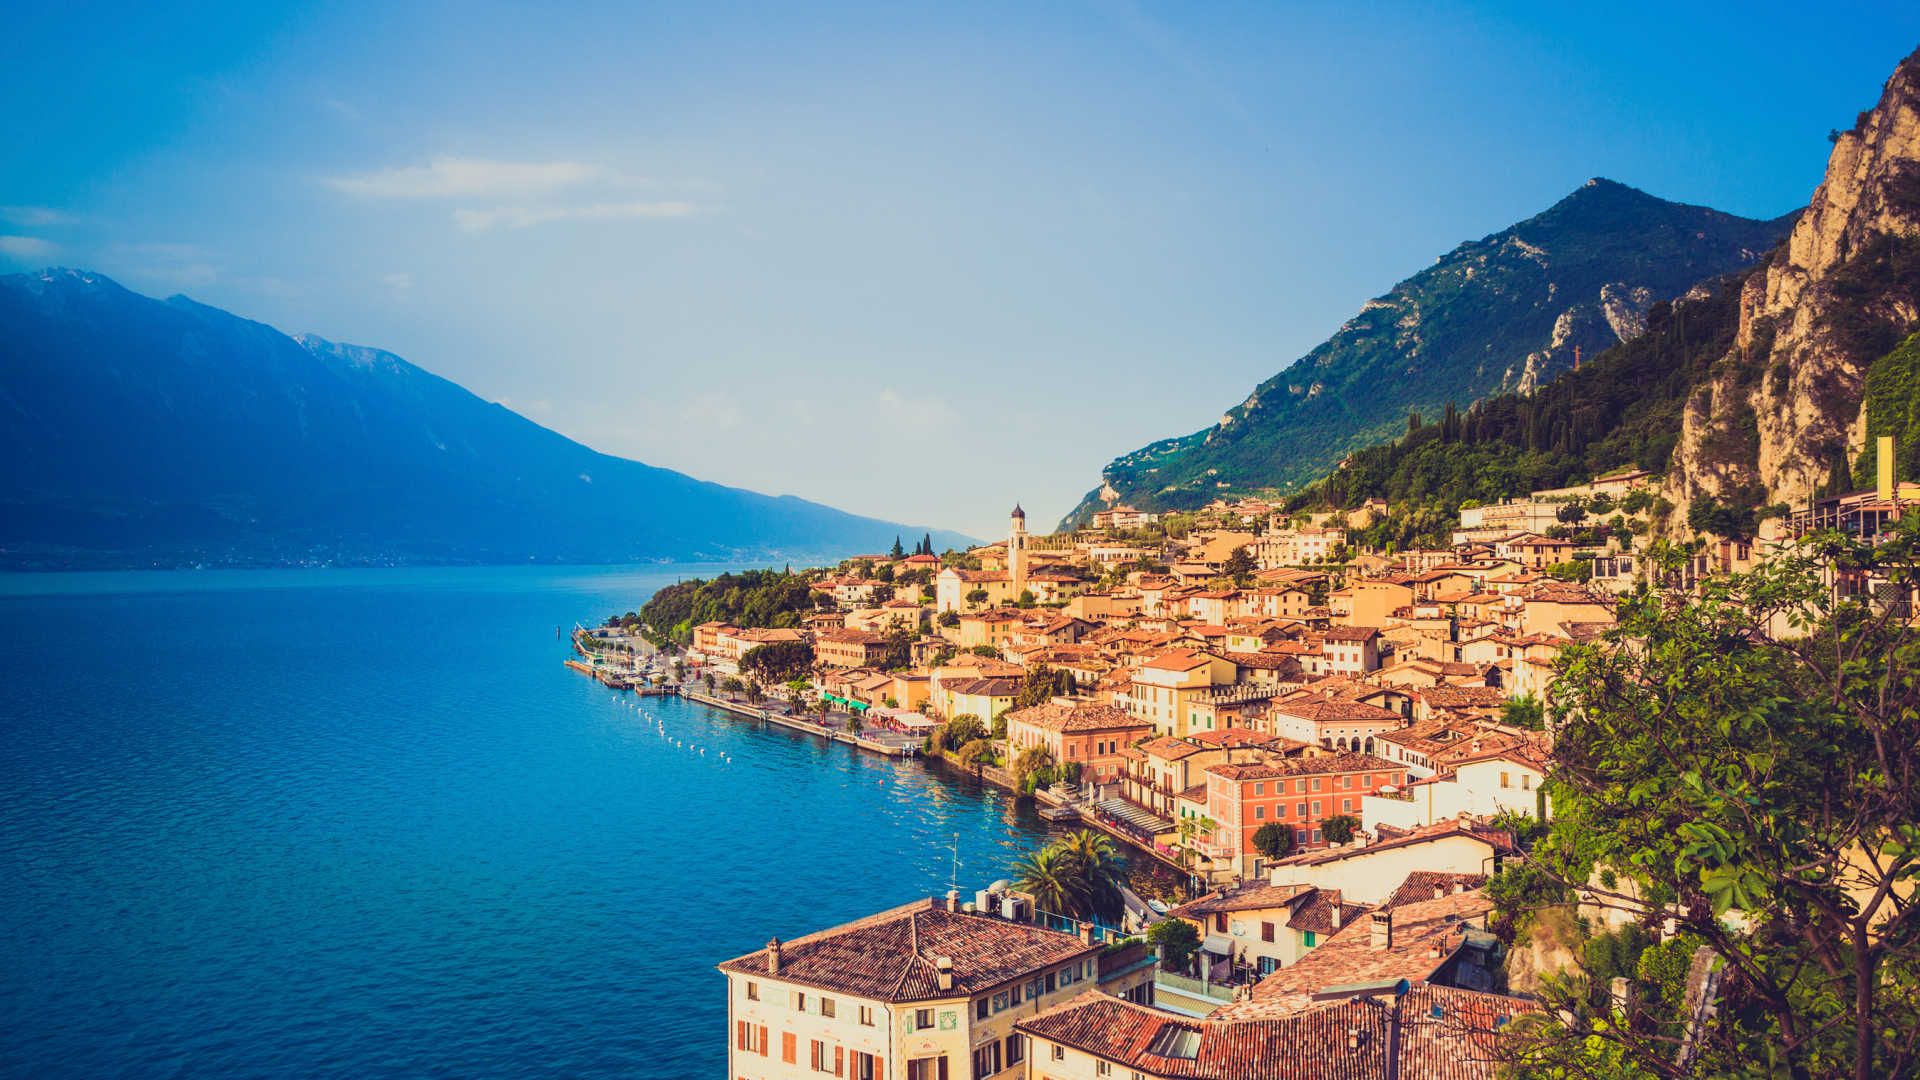 Lake Garda 2 Transfers Tours